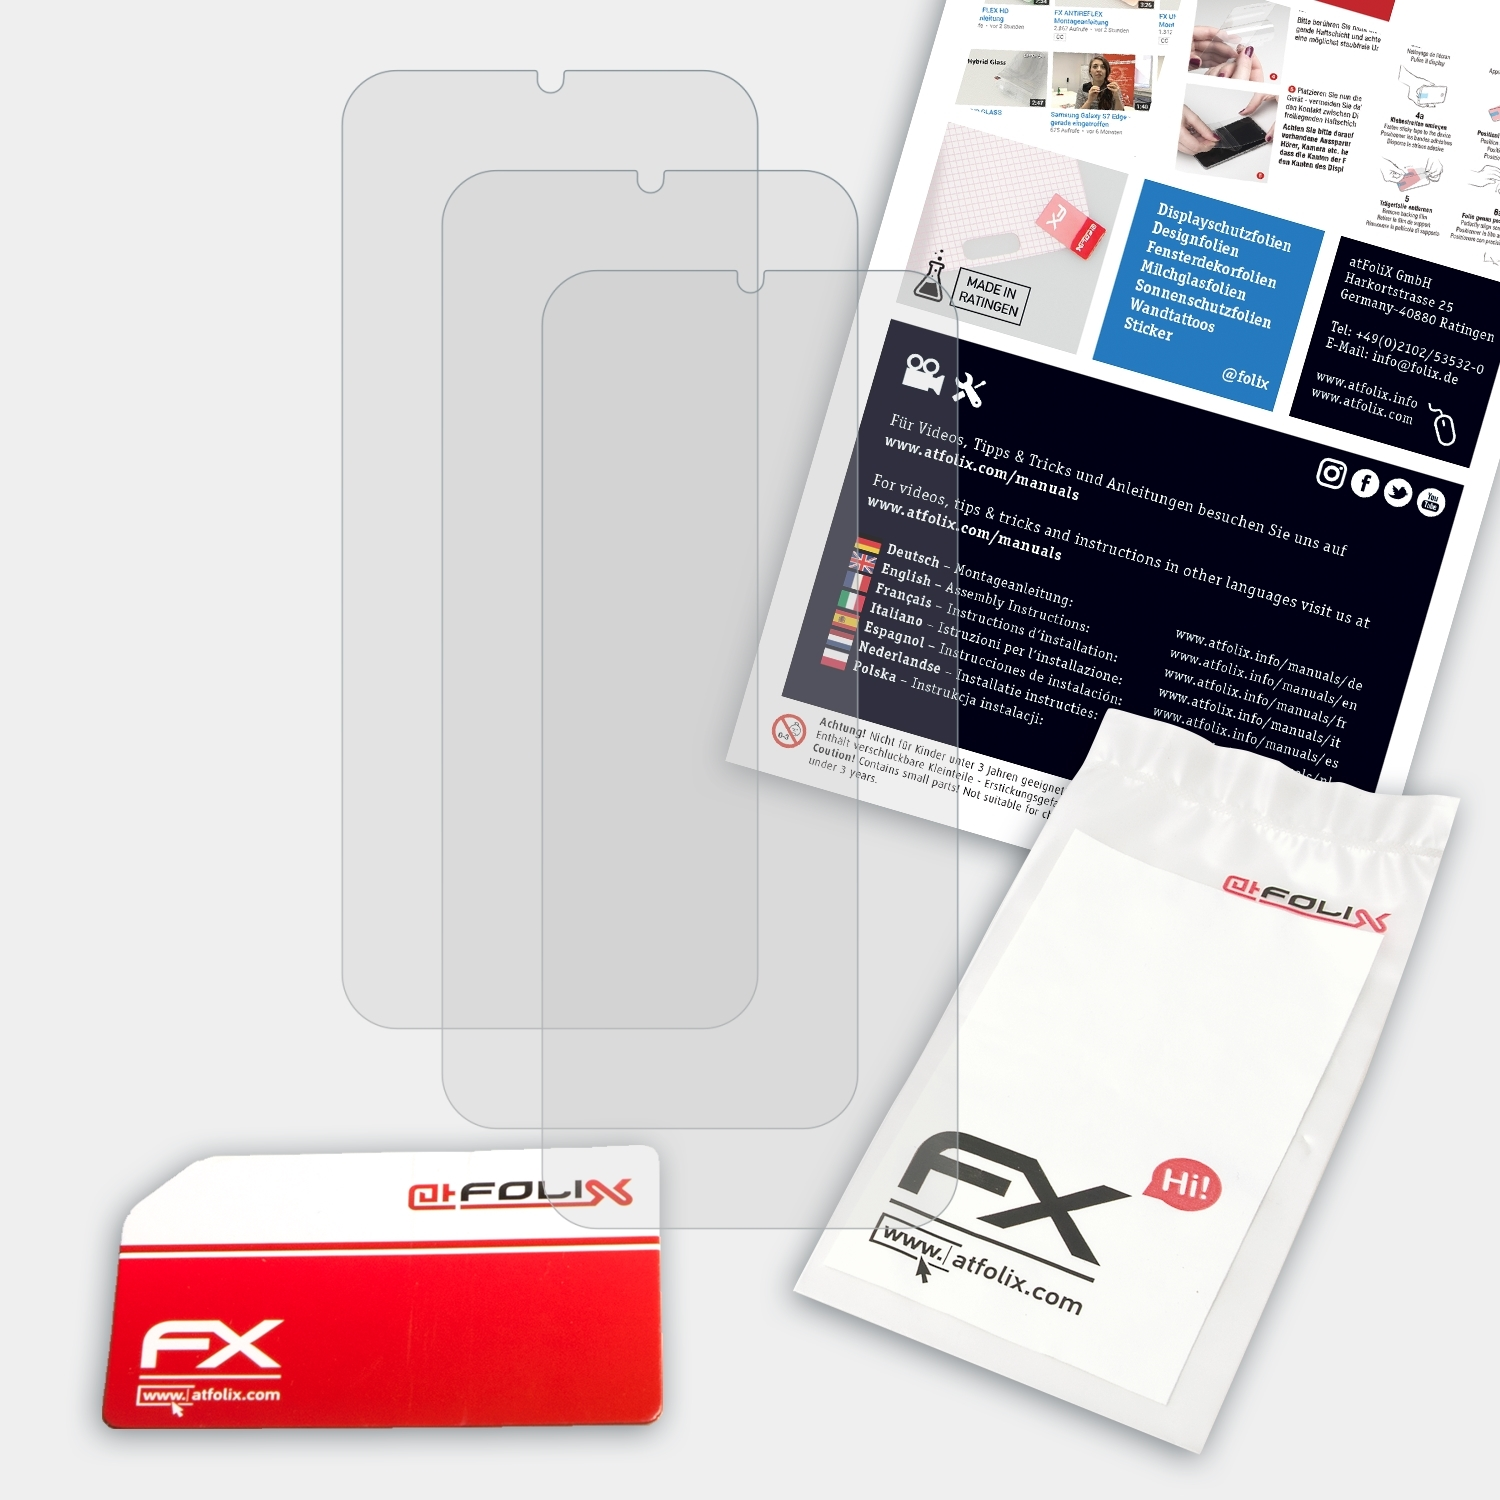 3x FX-Antireflex BLU G9 ATFOLIX Pro) Displayschutz(für